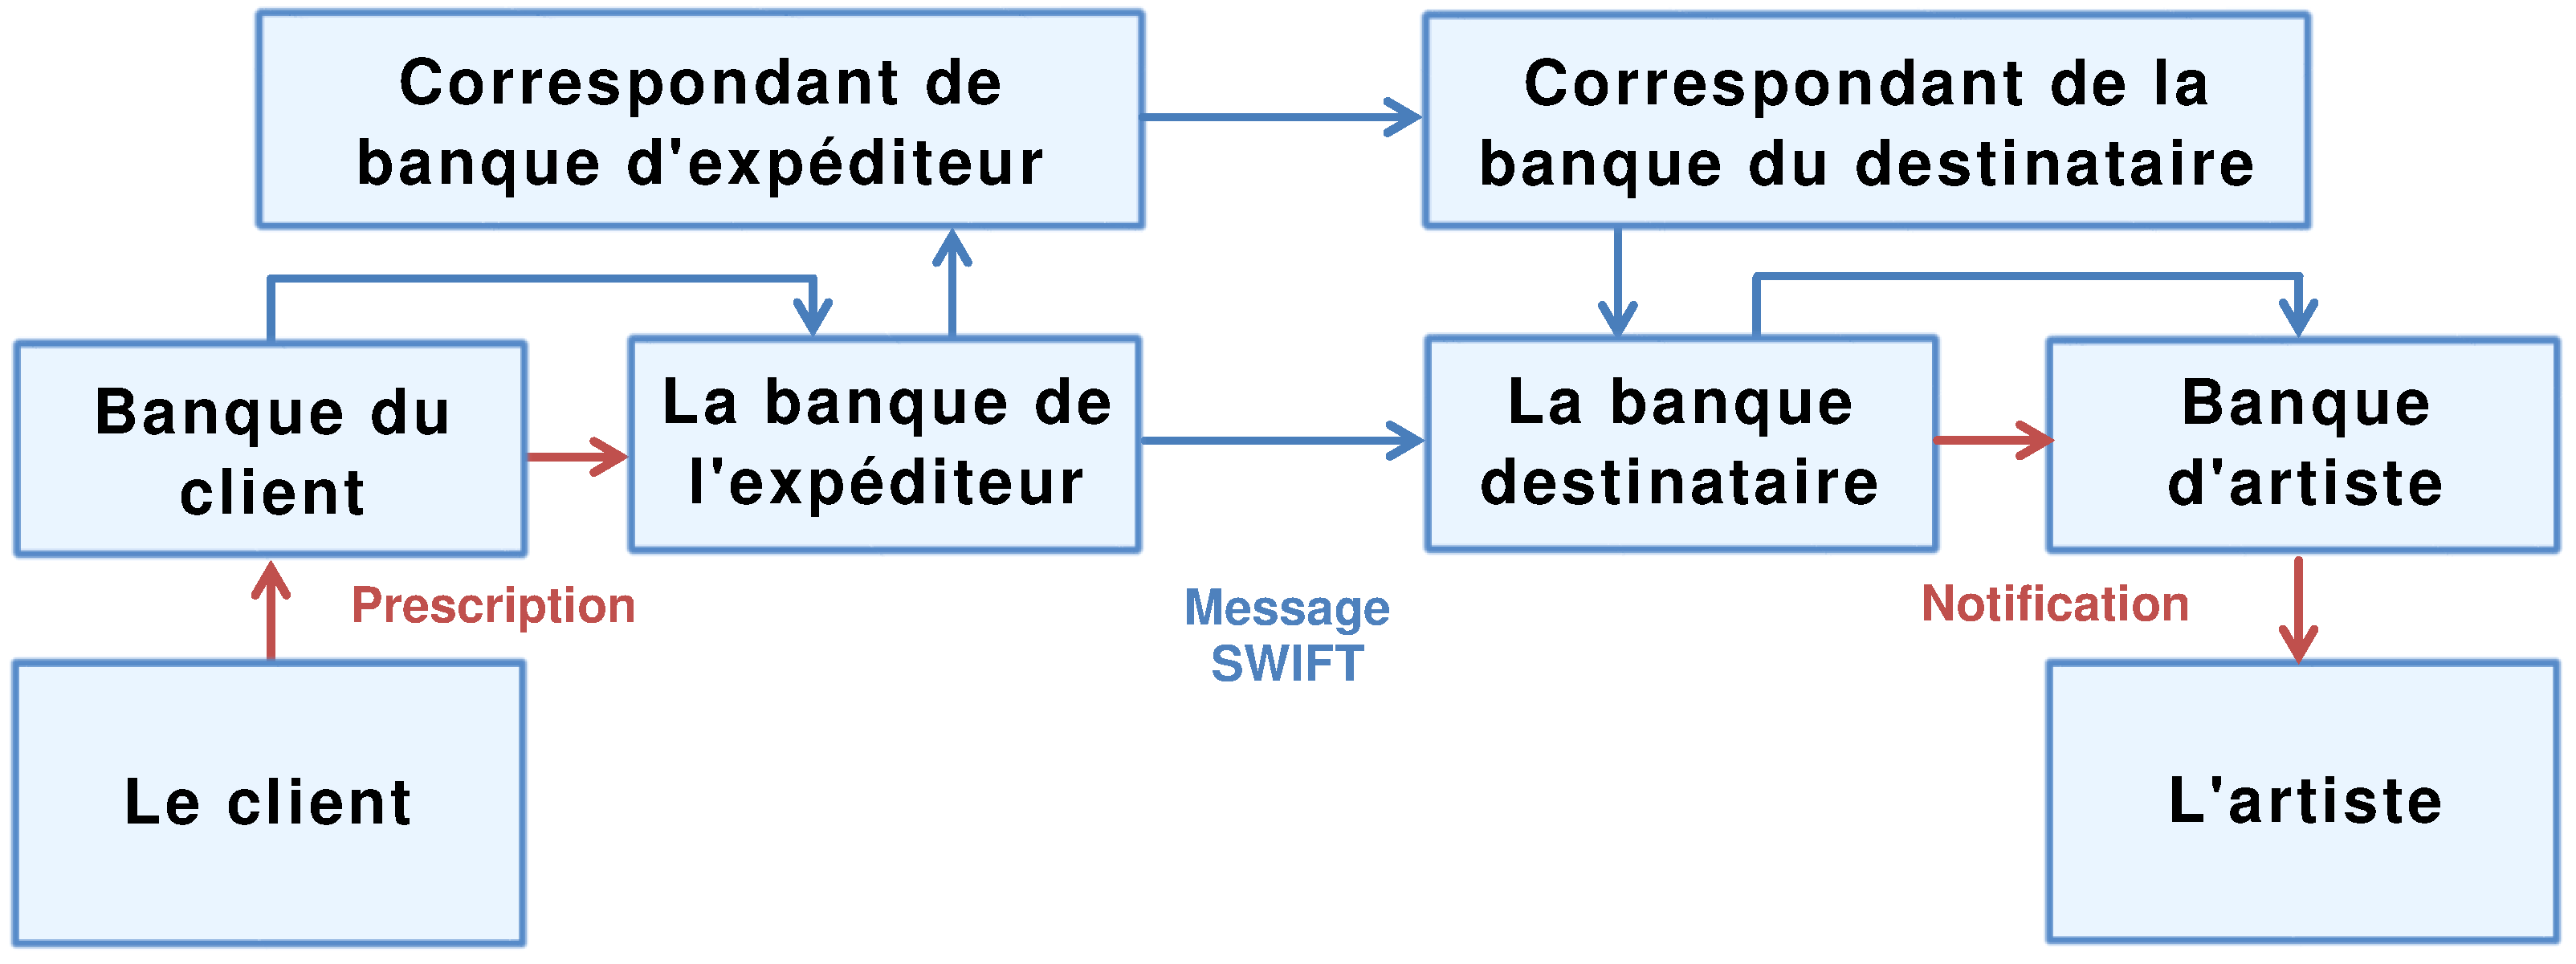 Comment fonctionne le système de messages (traductions) SWIFT